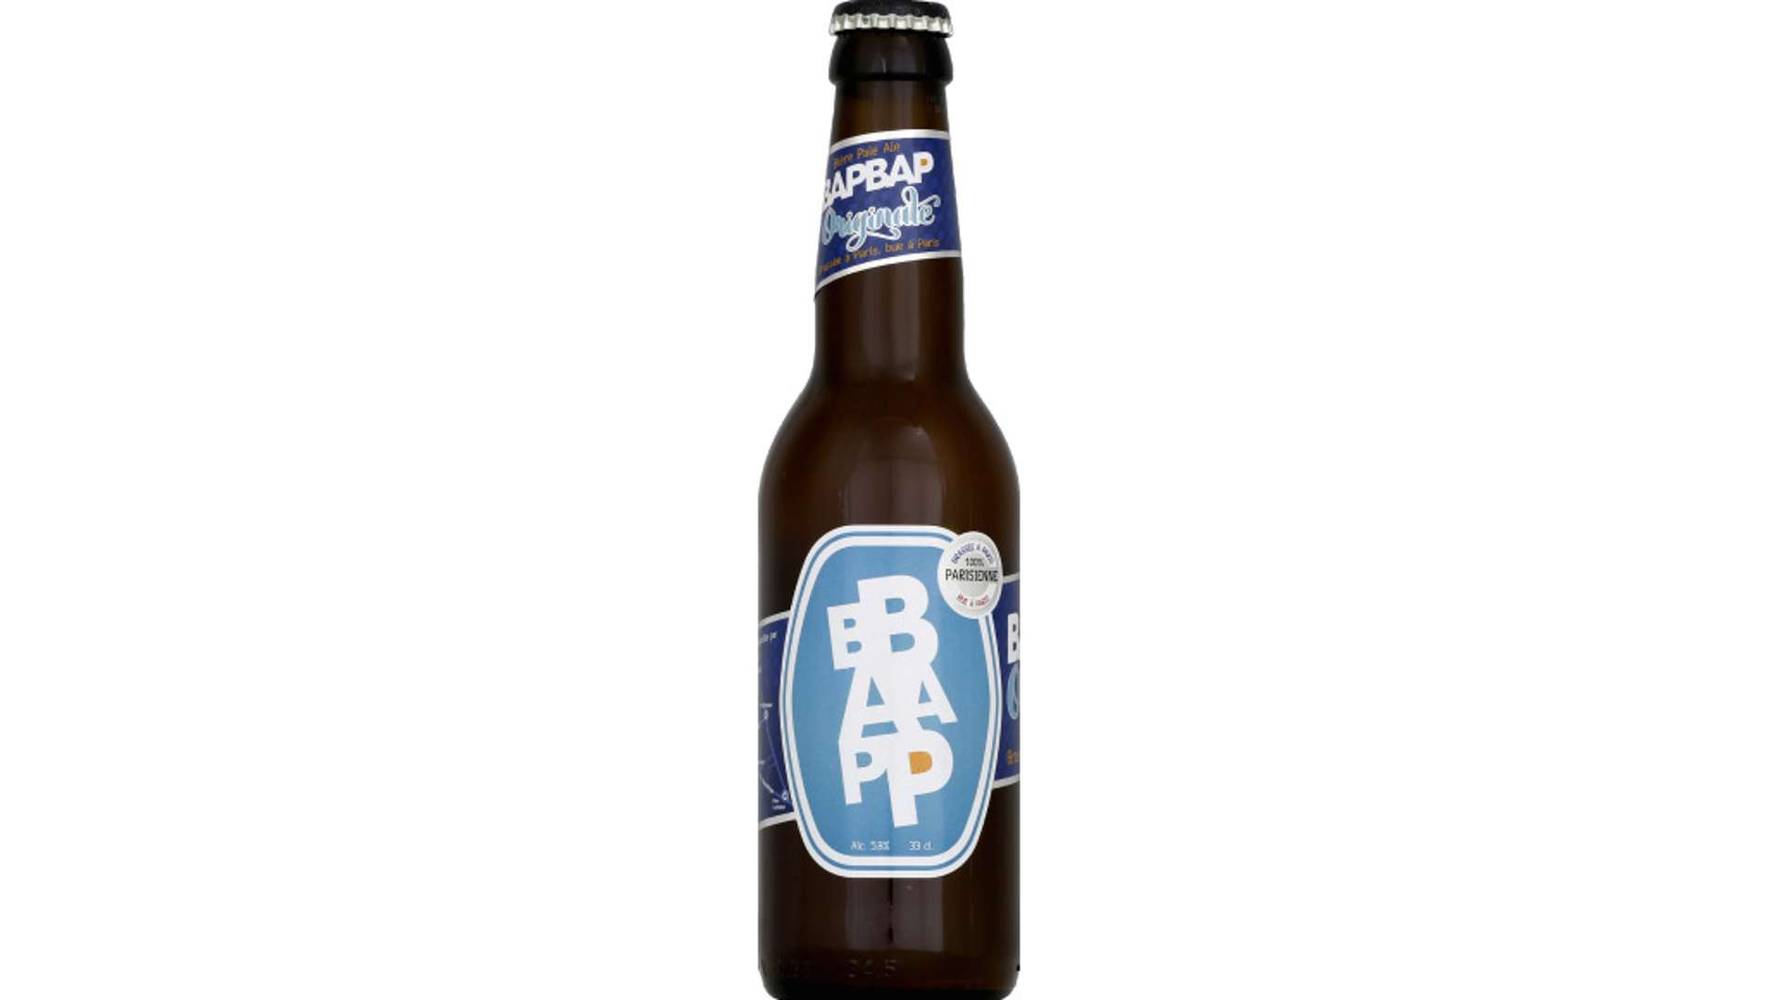 Bapbap - Bière pale ale originale (33cl)